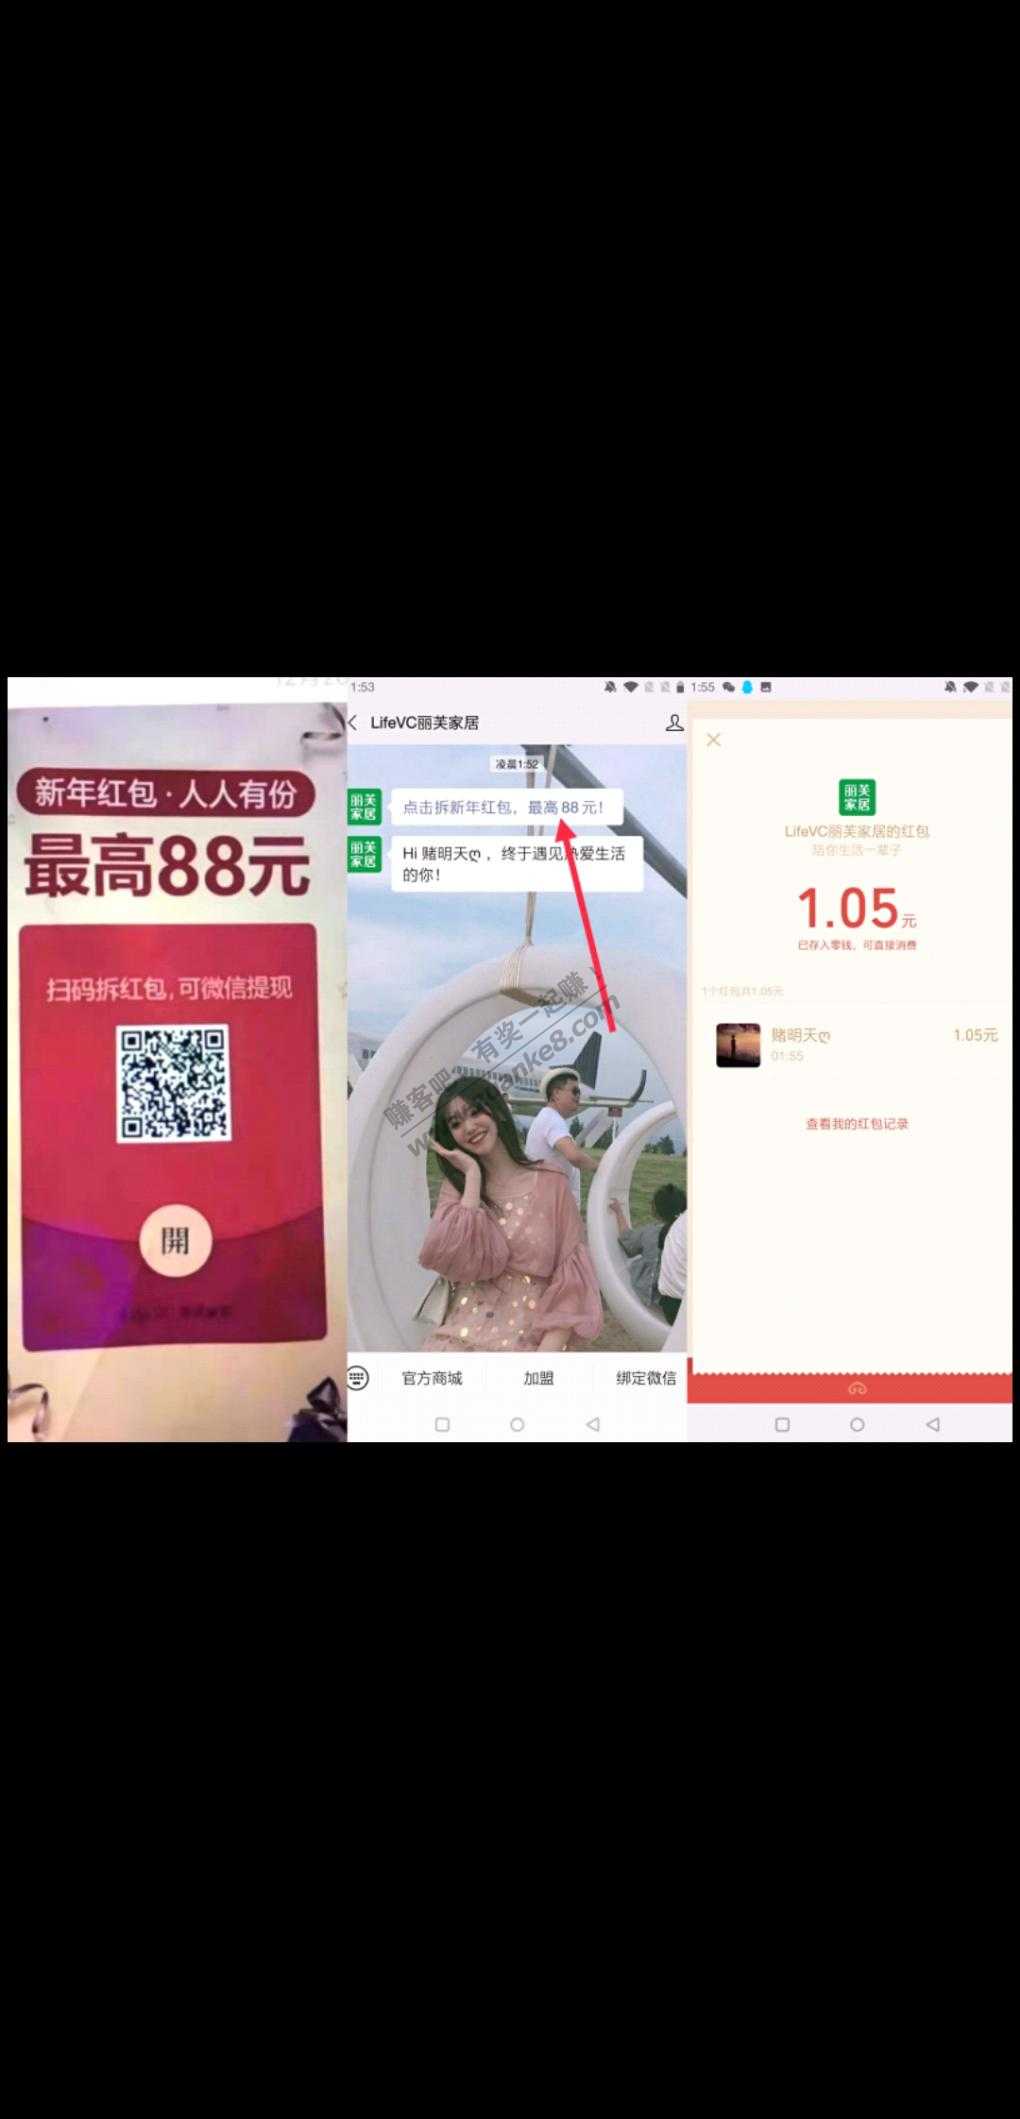 目前必中WX1元+红包-惠小助(52huixz.com)